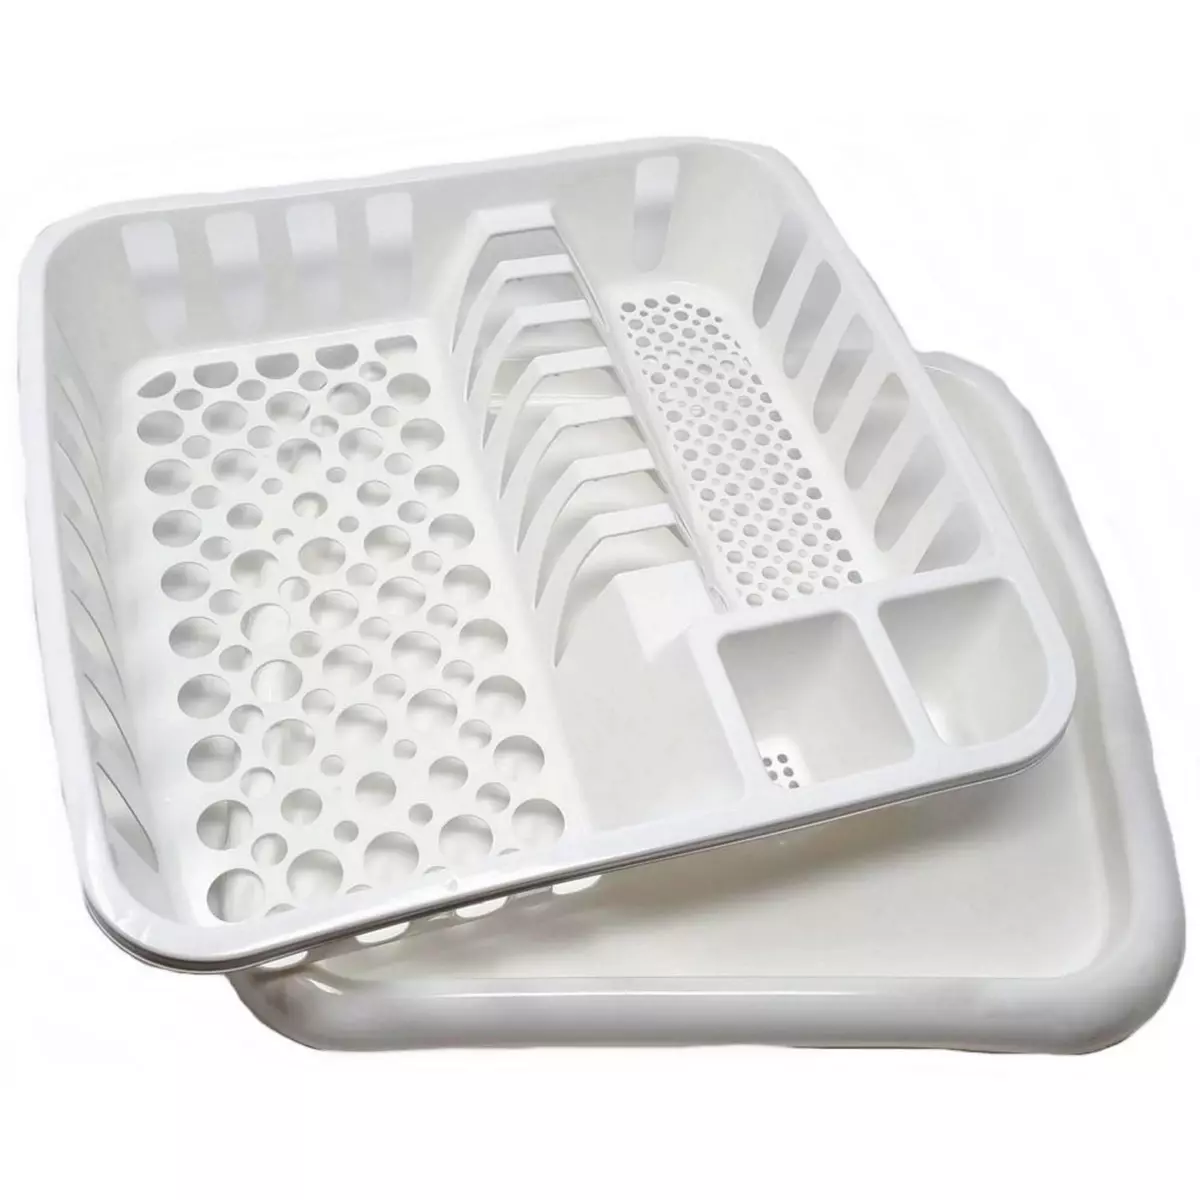  Egouttoir a vaisselle blanc 37 x 35 x 9 cm avec bac en plastique